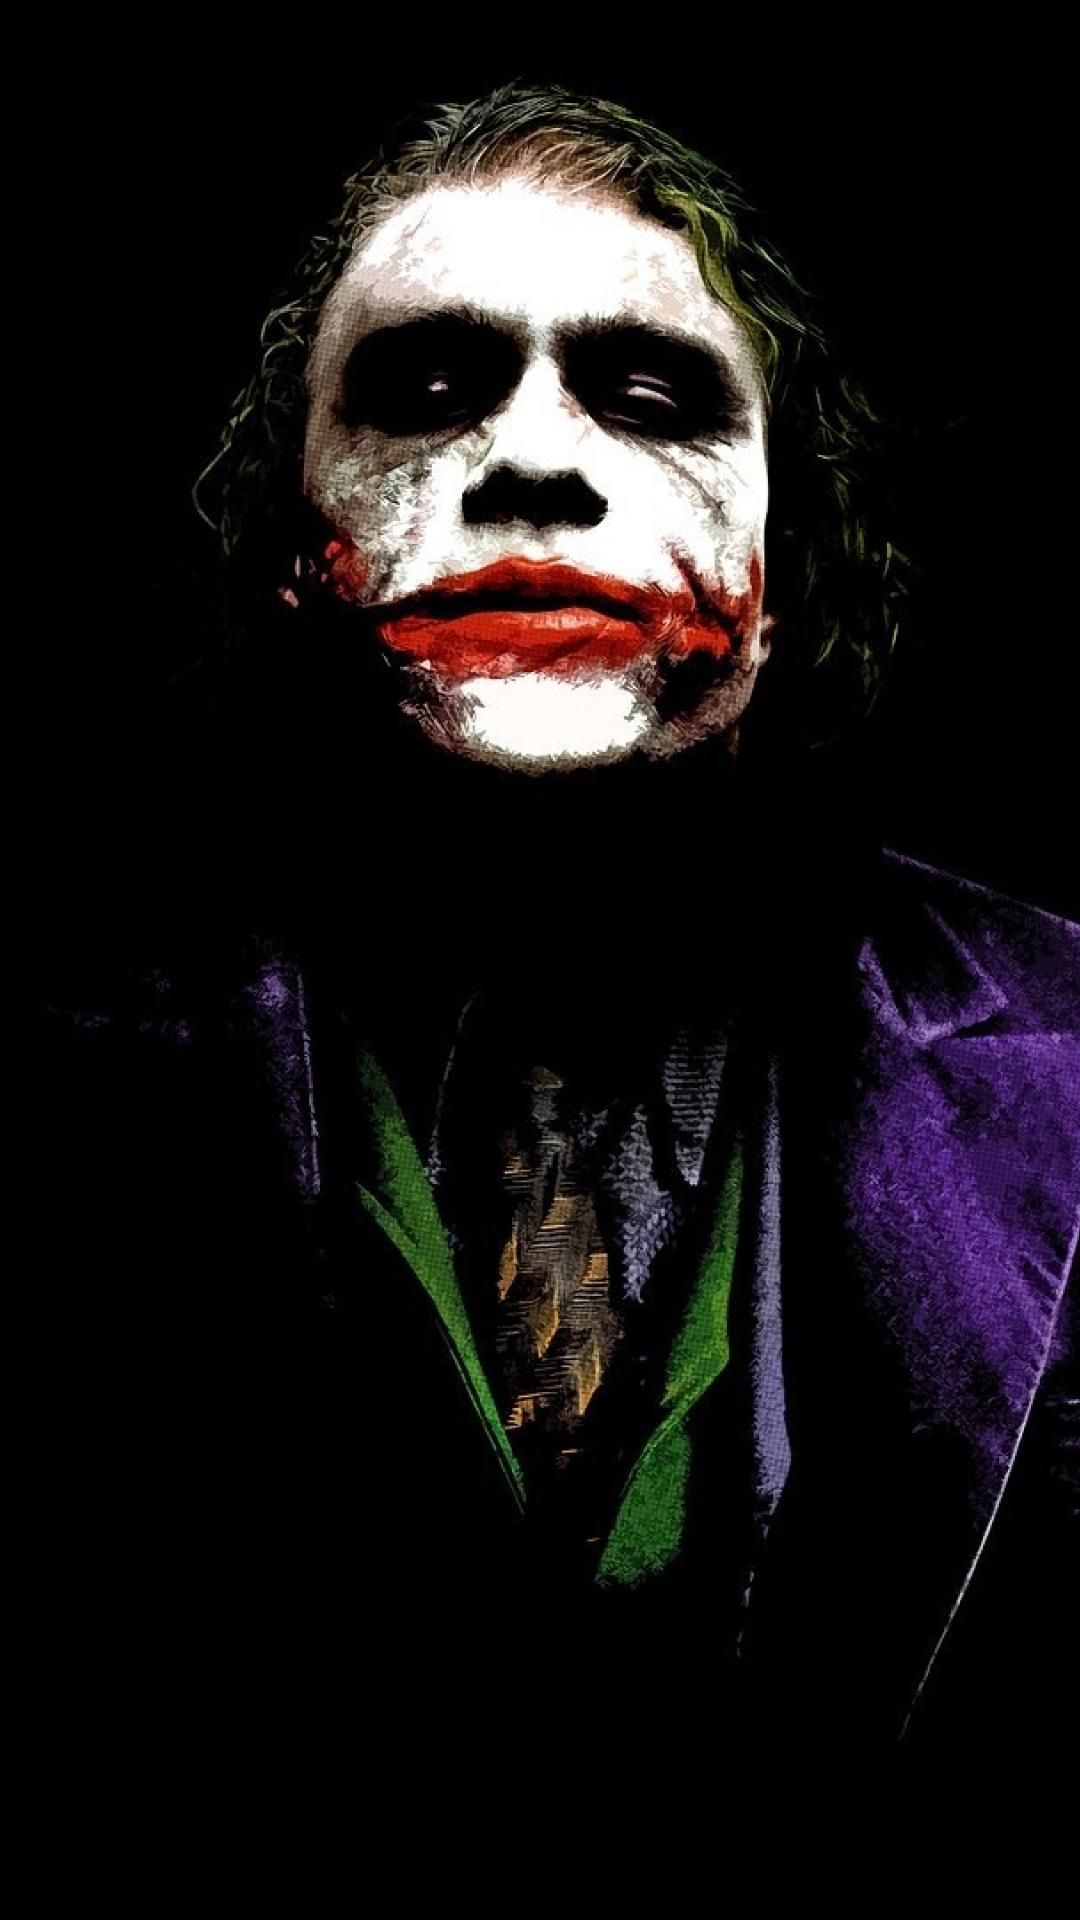 Joker Iphone 11 Wallpapers